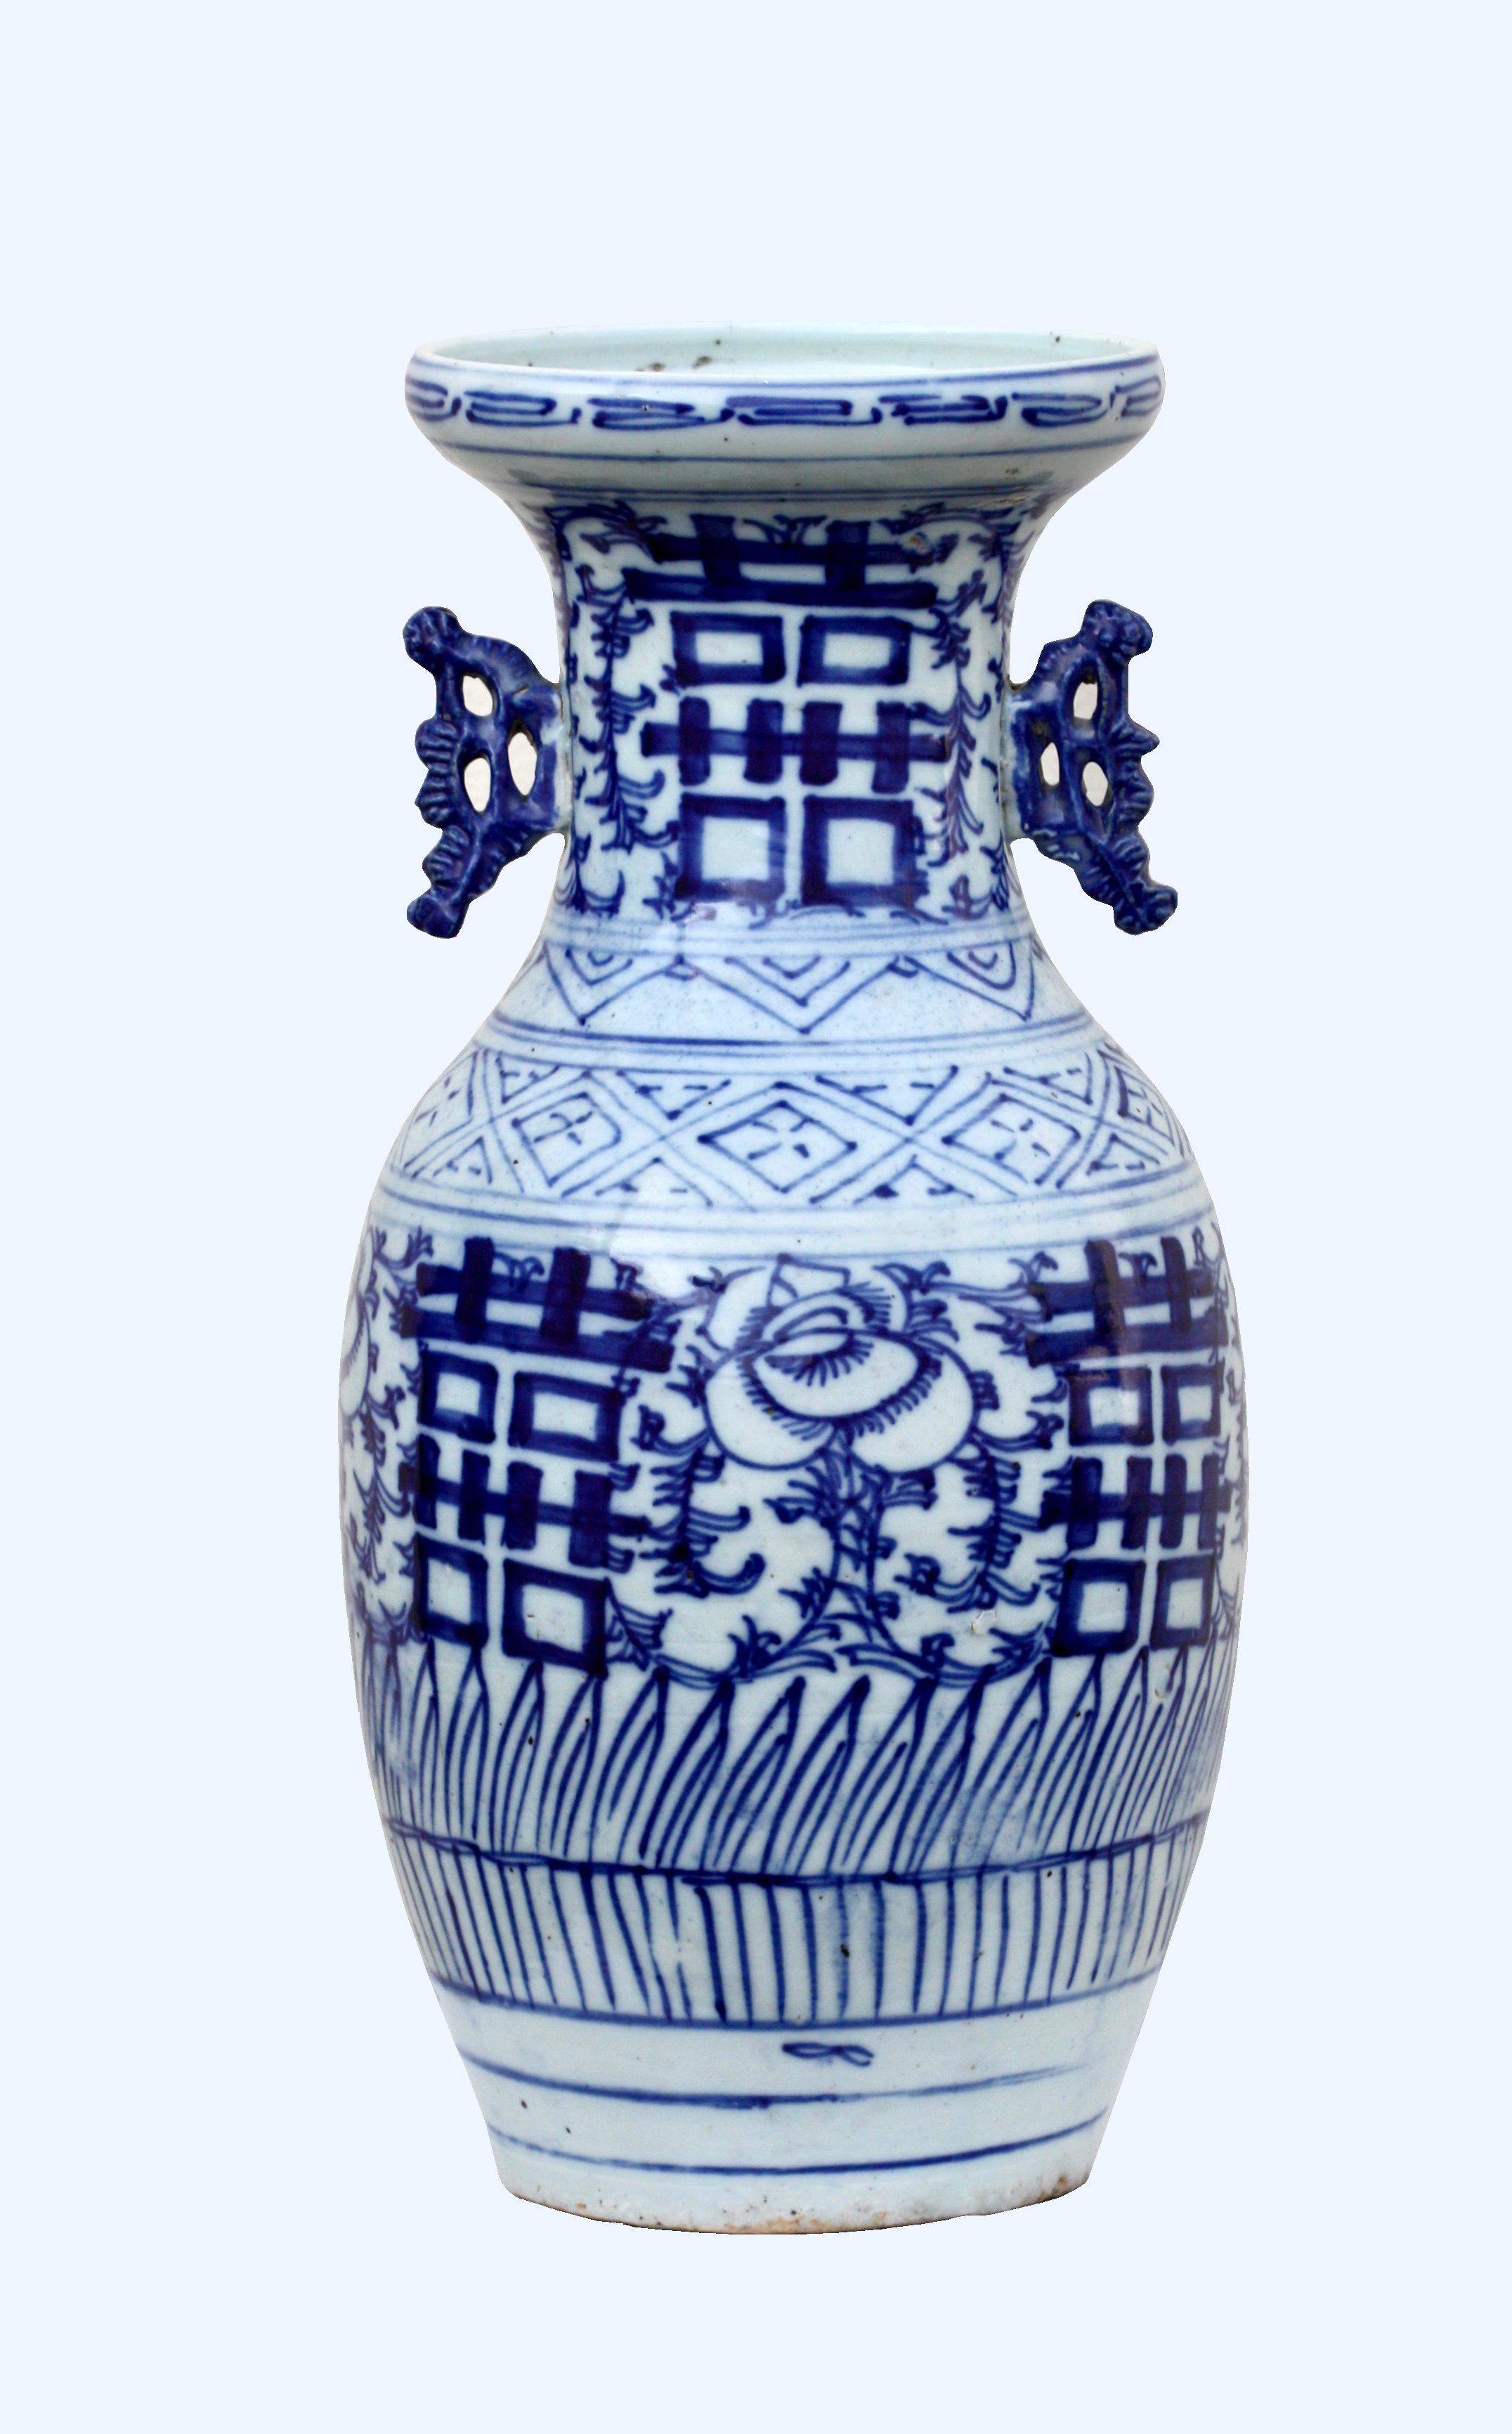 Vase en porcelaine bleu et blanc de Chine
De forme balustre, décorée de motifs floraux, flanquée d'anses en forme de feuilles.
Mesure : Hauteur 16 in. (40.64 cm.)